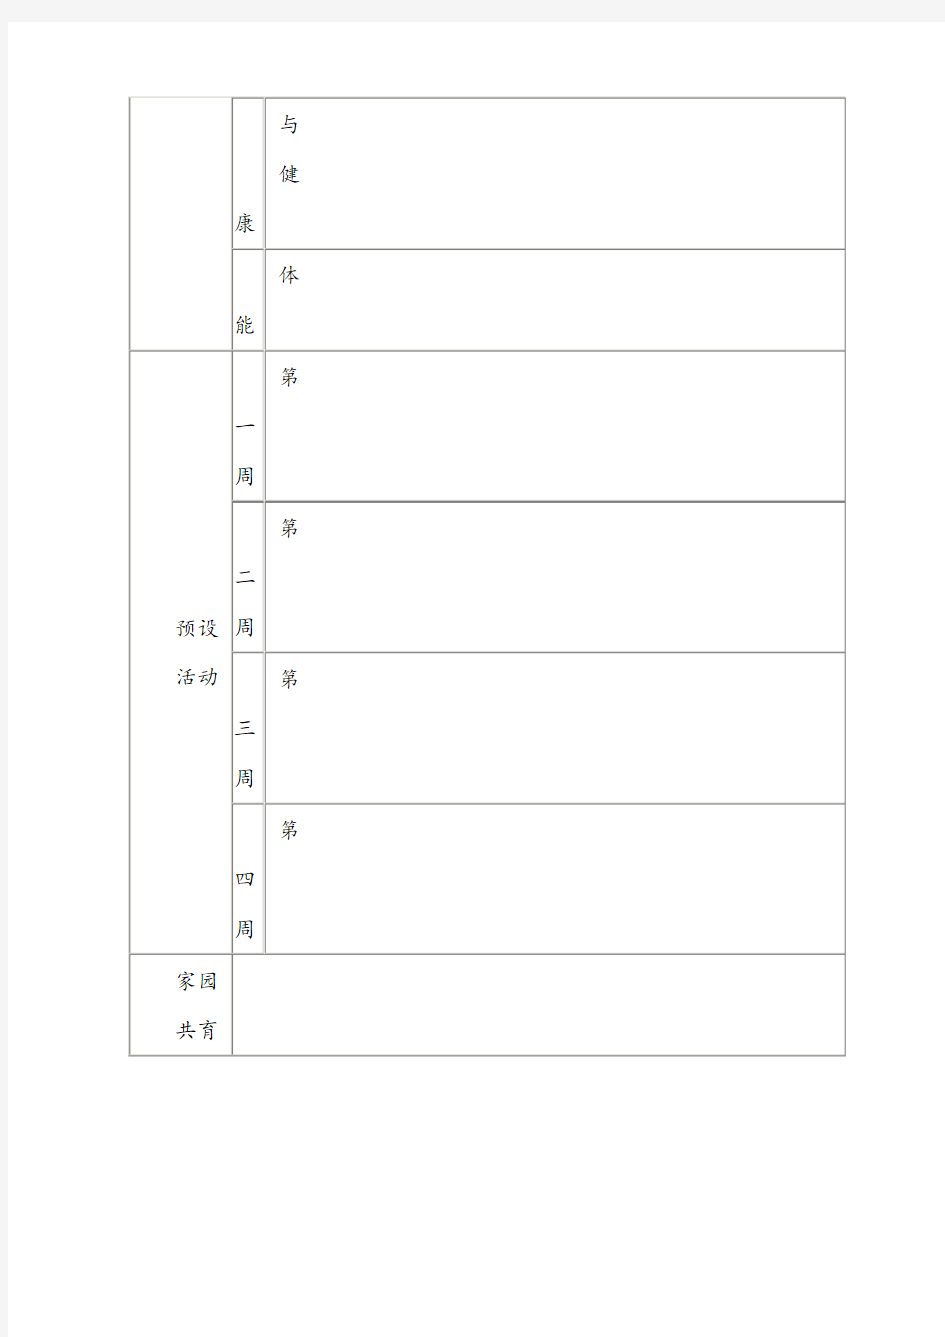 幼儿园大班月主题活动计划表(模板)